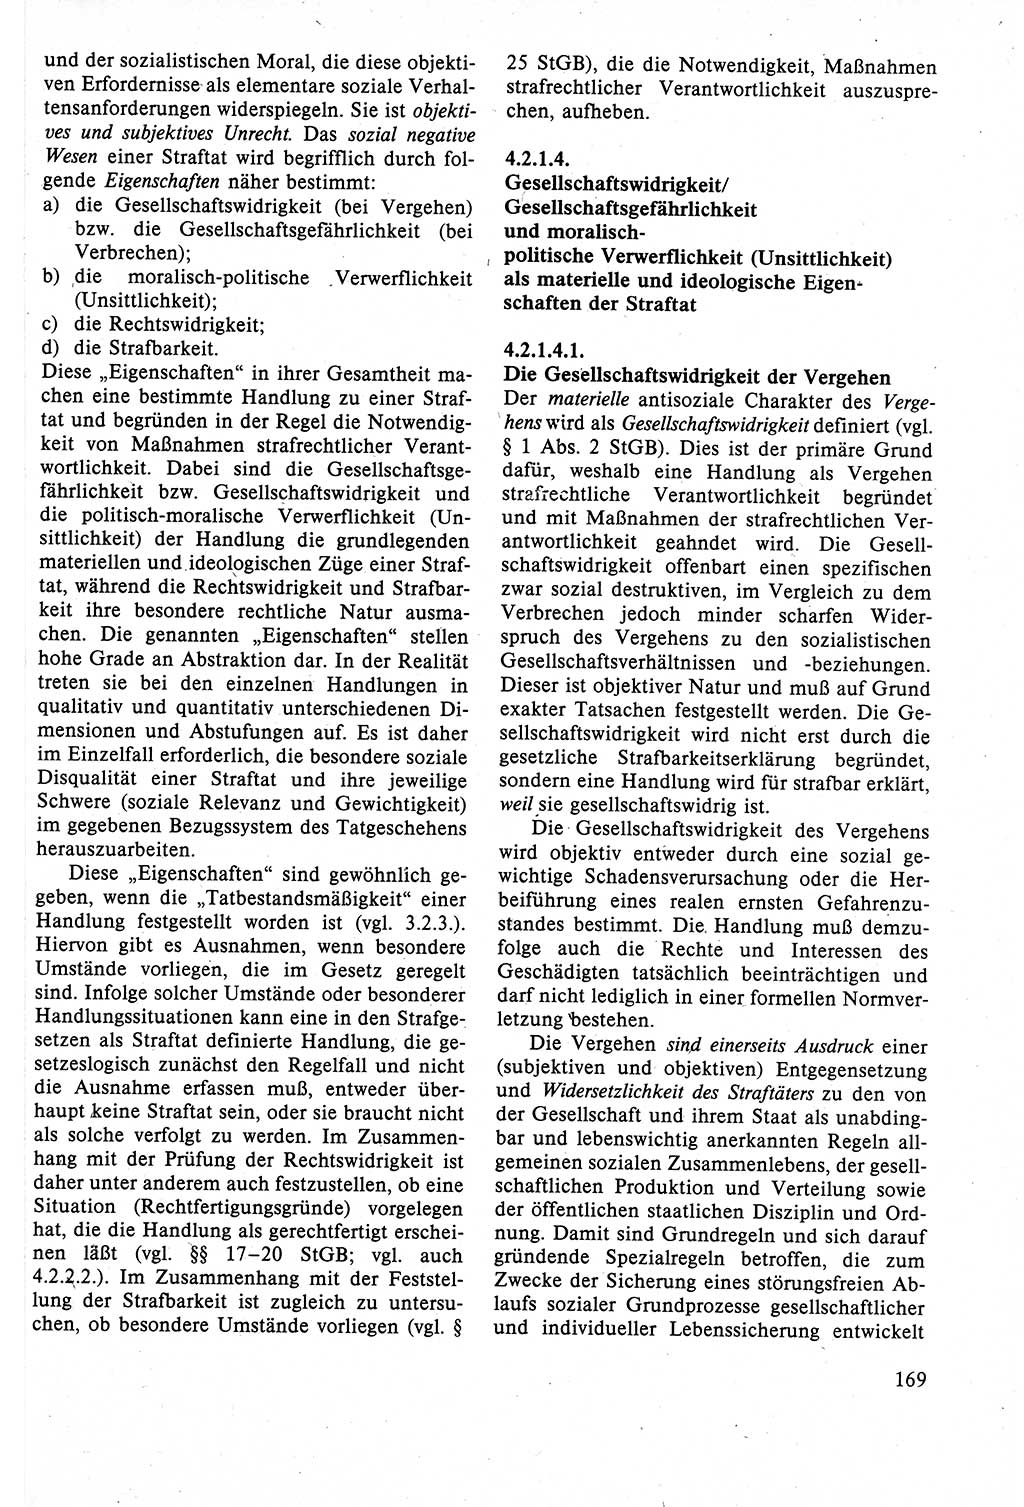 Strafrecht der DDR (Deutsche Demokratische Republik), Lehrbuch 1988, Seite 169 (Strafr. DDR Lb. 1988, S. 169)